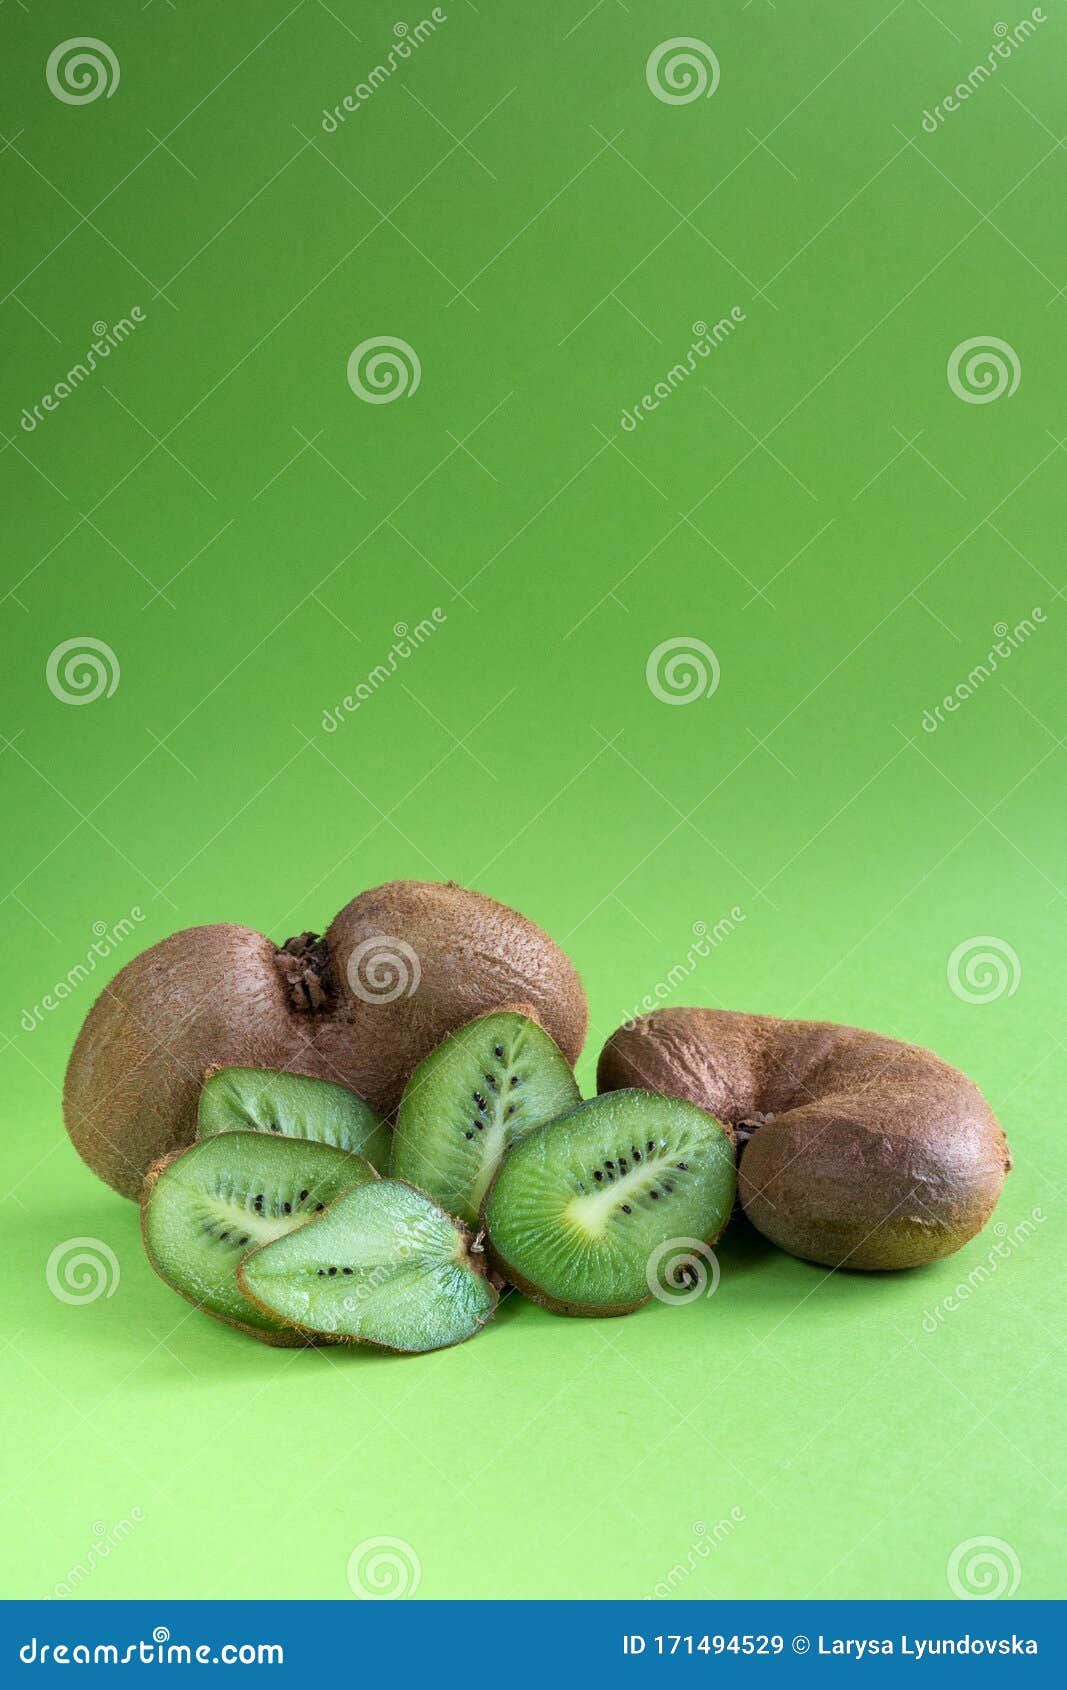 Kiwi hữu cơ không chỉ là một loại trái cây tuyệt vời cho sức khỏe, mà còn là nguồn cảm hứng vô tận cho nghệ thuật. Xem hình ảnh liên quan để khám phá sức sống sáng tạo của kiwi hữu cơ.